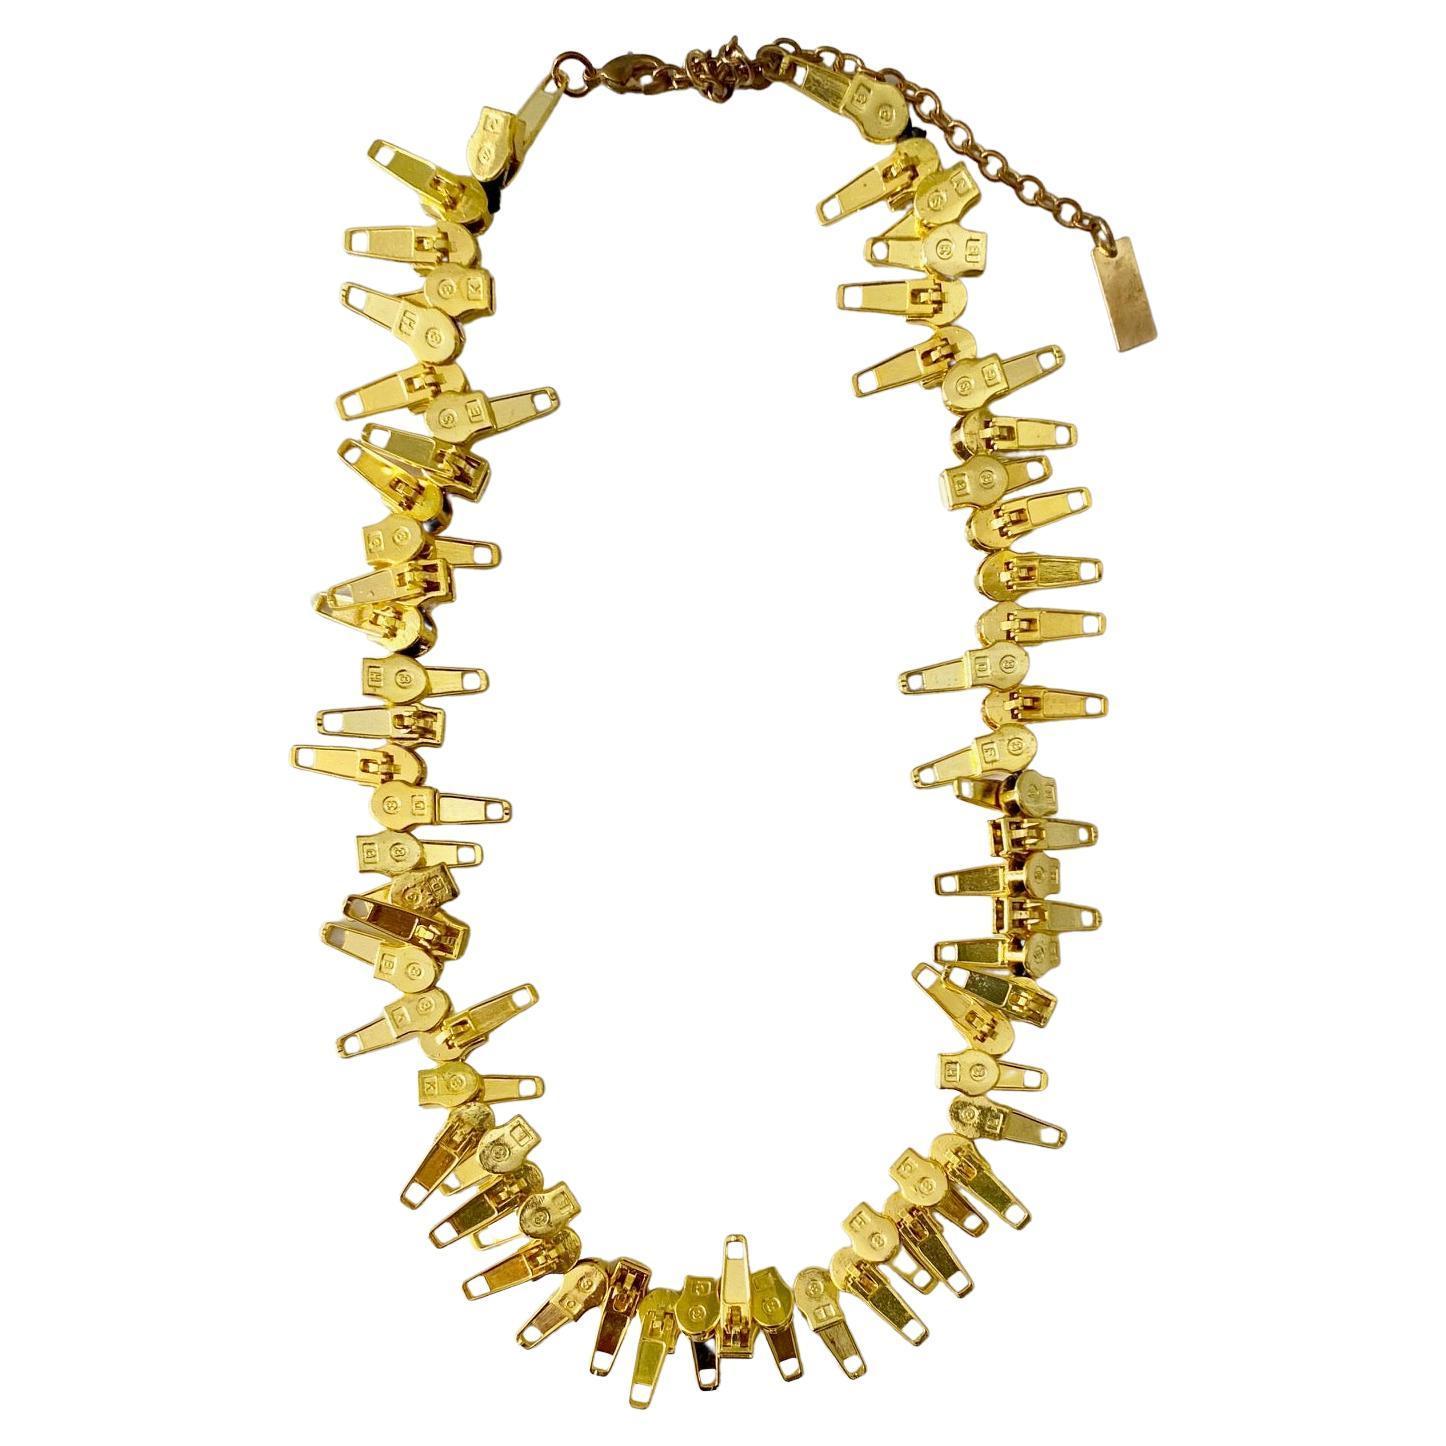 Diese Statement-Halskette von Marc Jacobs ist aus mehreren goldfarbenen Reißverschlüssen gefertigt und mit dem Signature-Stempel des Designers am Verschluss versehen. Sie ist in der Länge verstellbar und wird mit einem Karabinerverschluss und einem